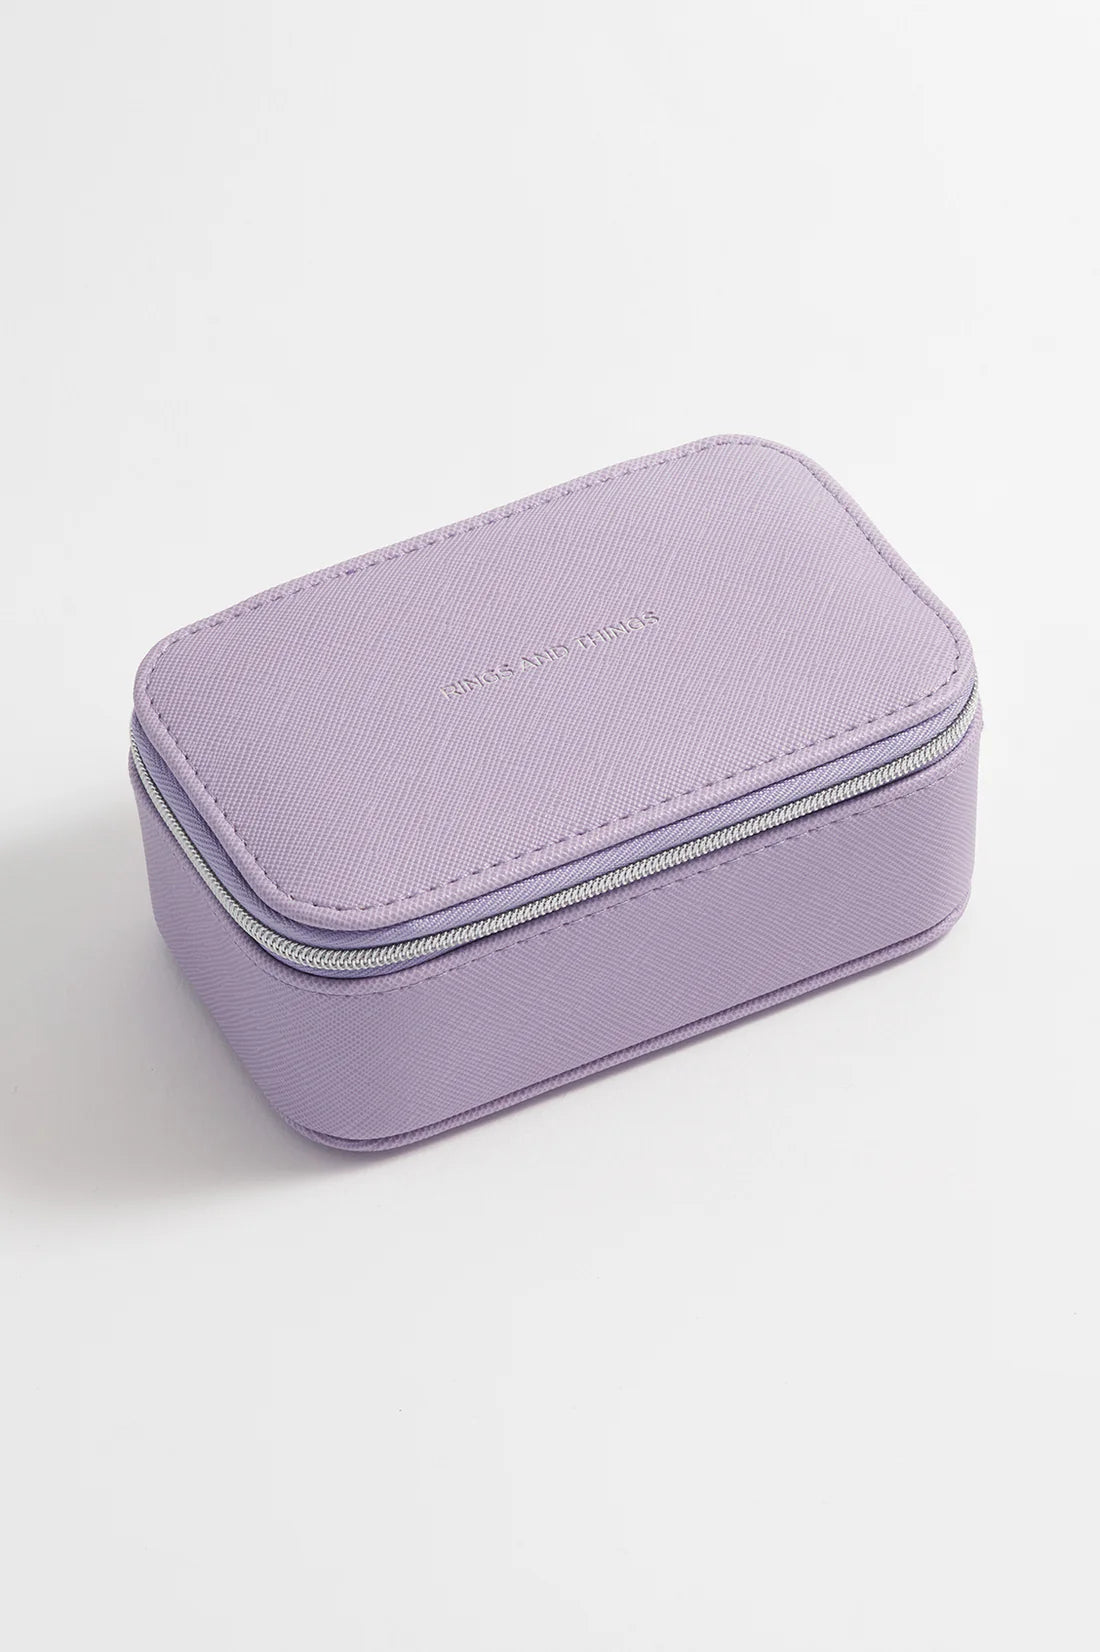 Lilac Saffiano Mini Jewellery Box